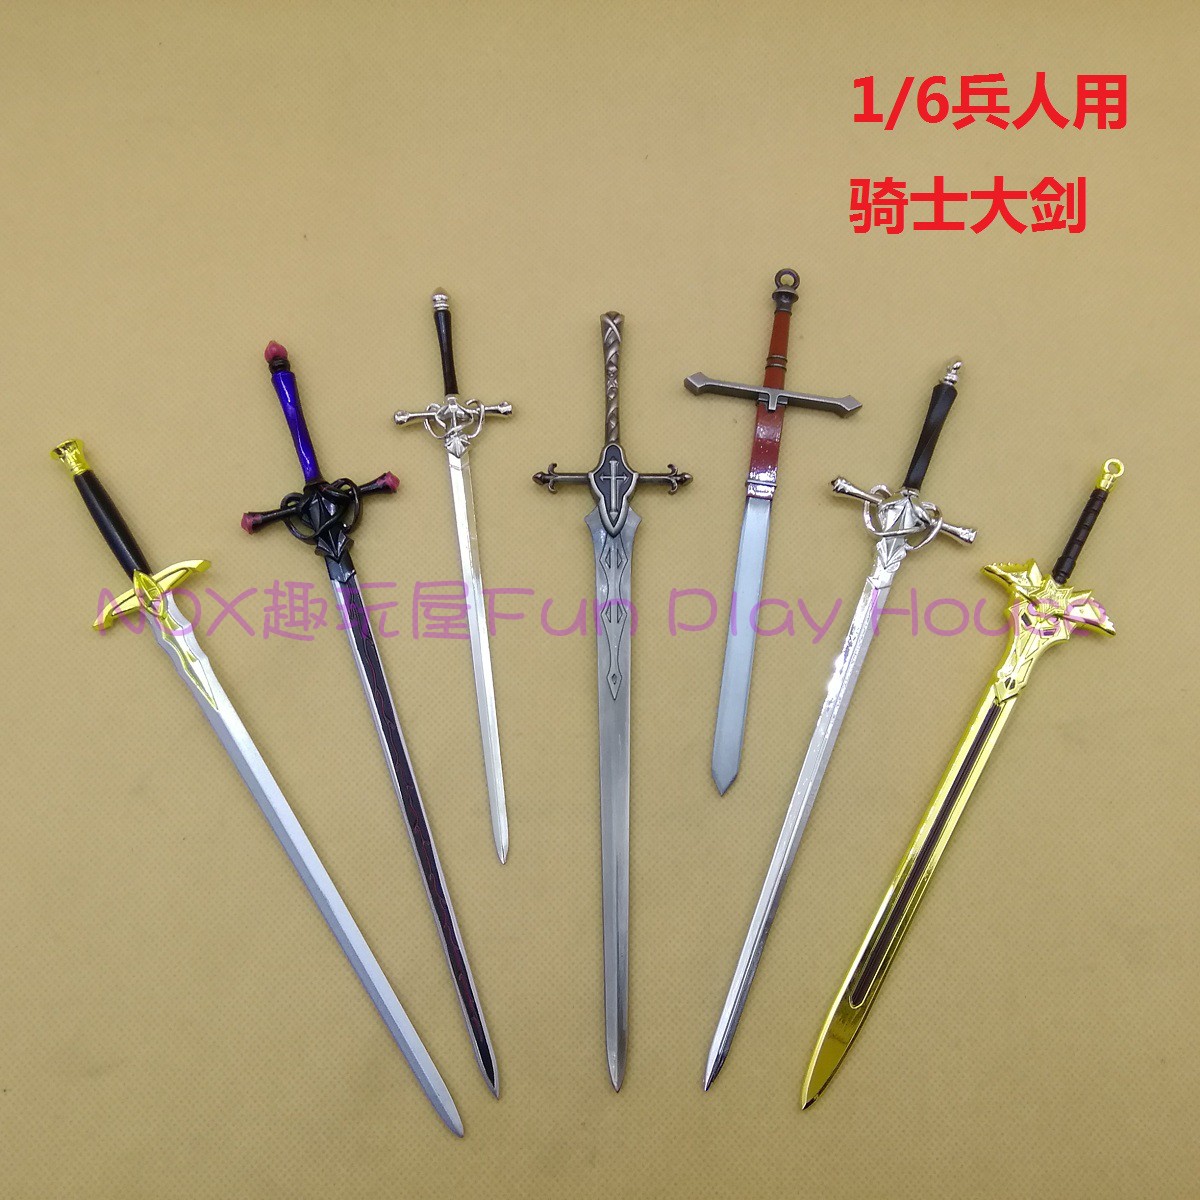 共175 件骑士剑十字剑相关商品